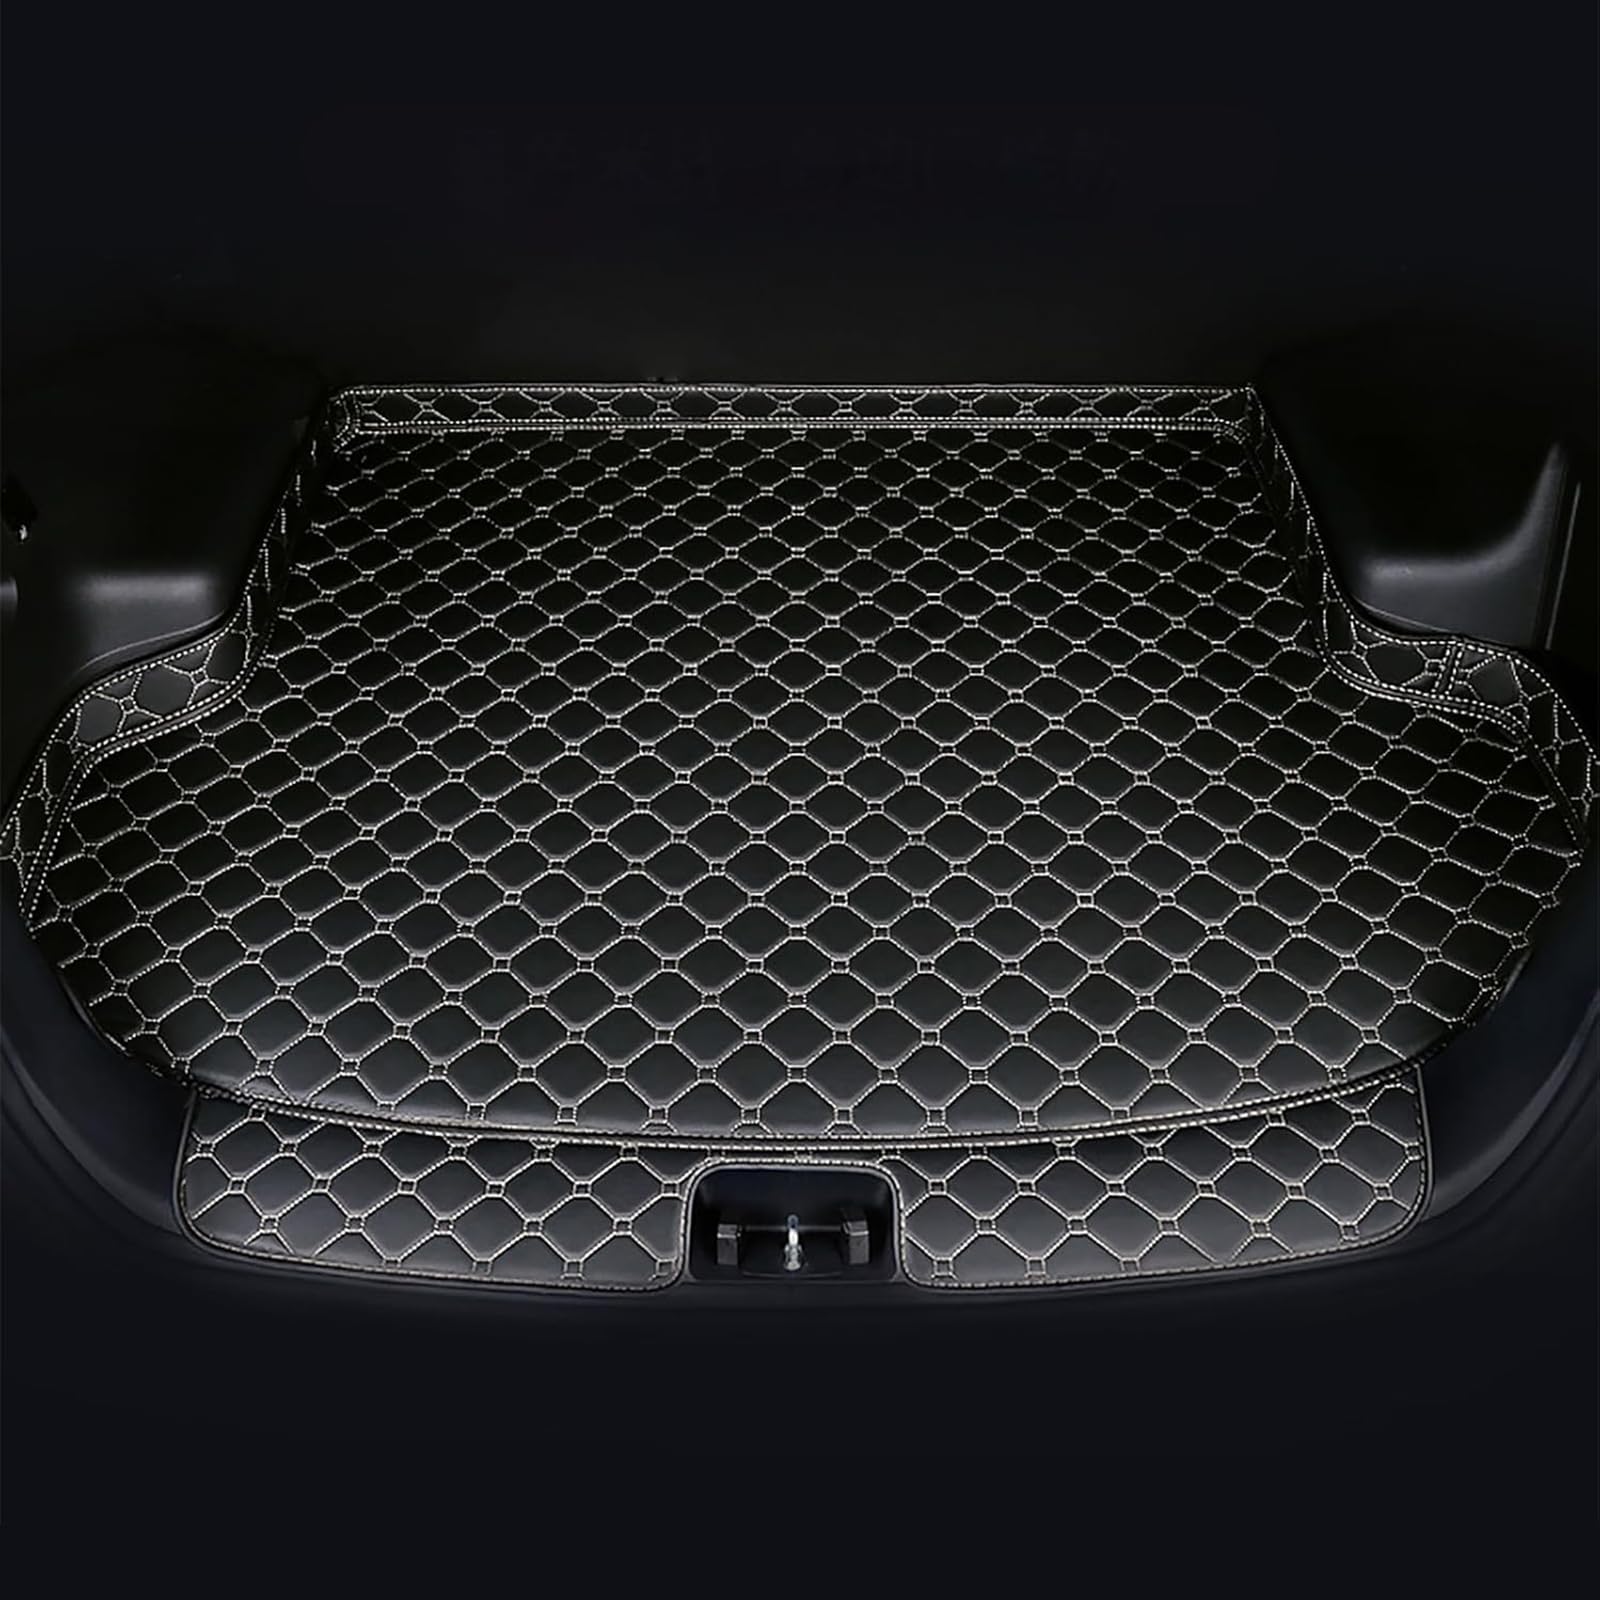 Auto Leder Kofferraummatten Für Audi Q3 8U 2011-2018, Wasserdicht rutschfest Kofferraumwanne Allwetter Cargo Teppich Schutzmatte Interieur Zubehör,B/Black-Beige von FNUQKREF